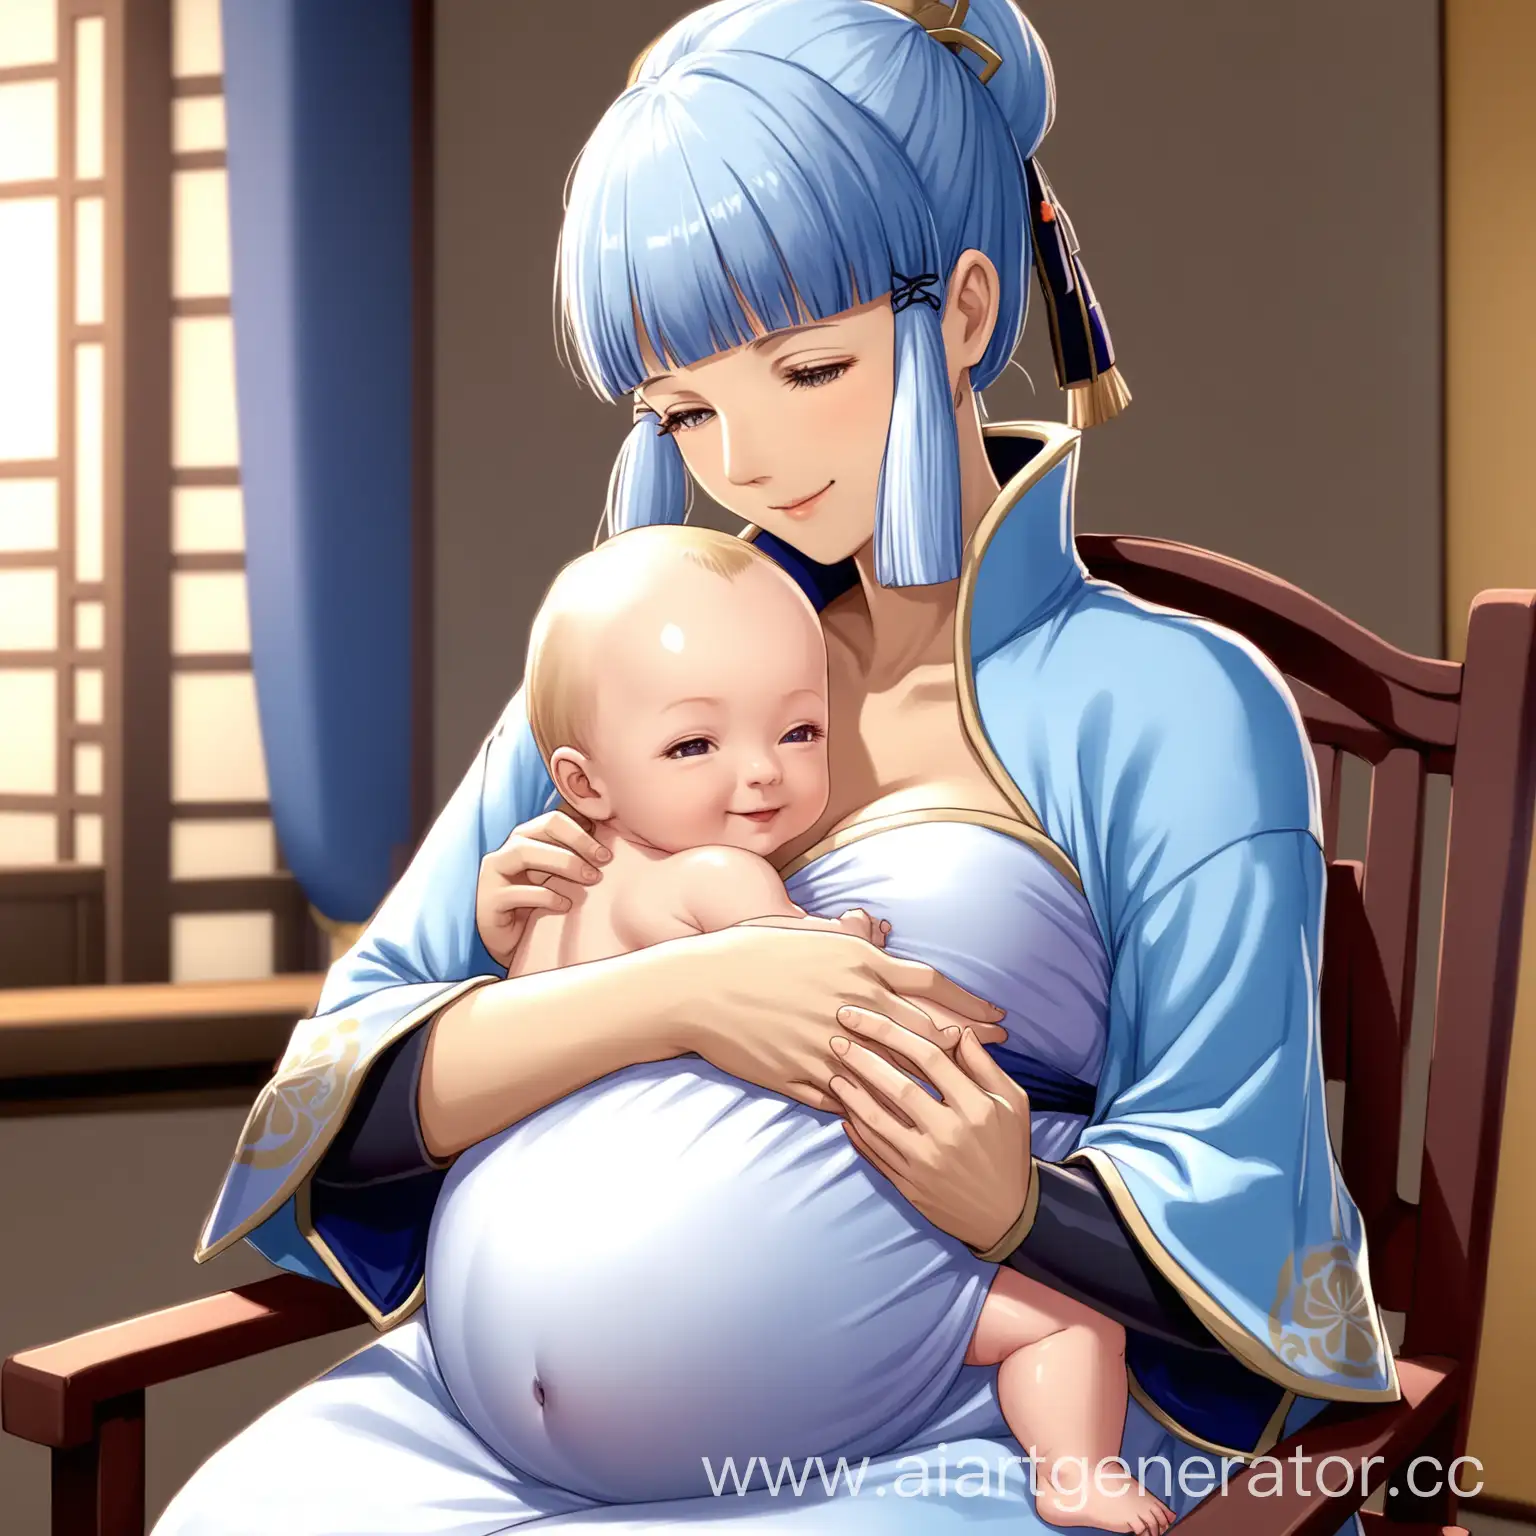 Камисато аяка из геншин импакт, беременная, сидит на стуле в красивом белом платье, на руках младенец, младенец кормится грудью, одна грудь голая, над ней склонился мужчина с свето- голубыми волосами, улыбается, смотрит на аяку